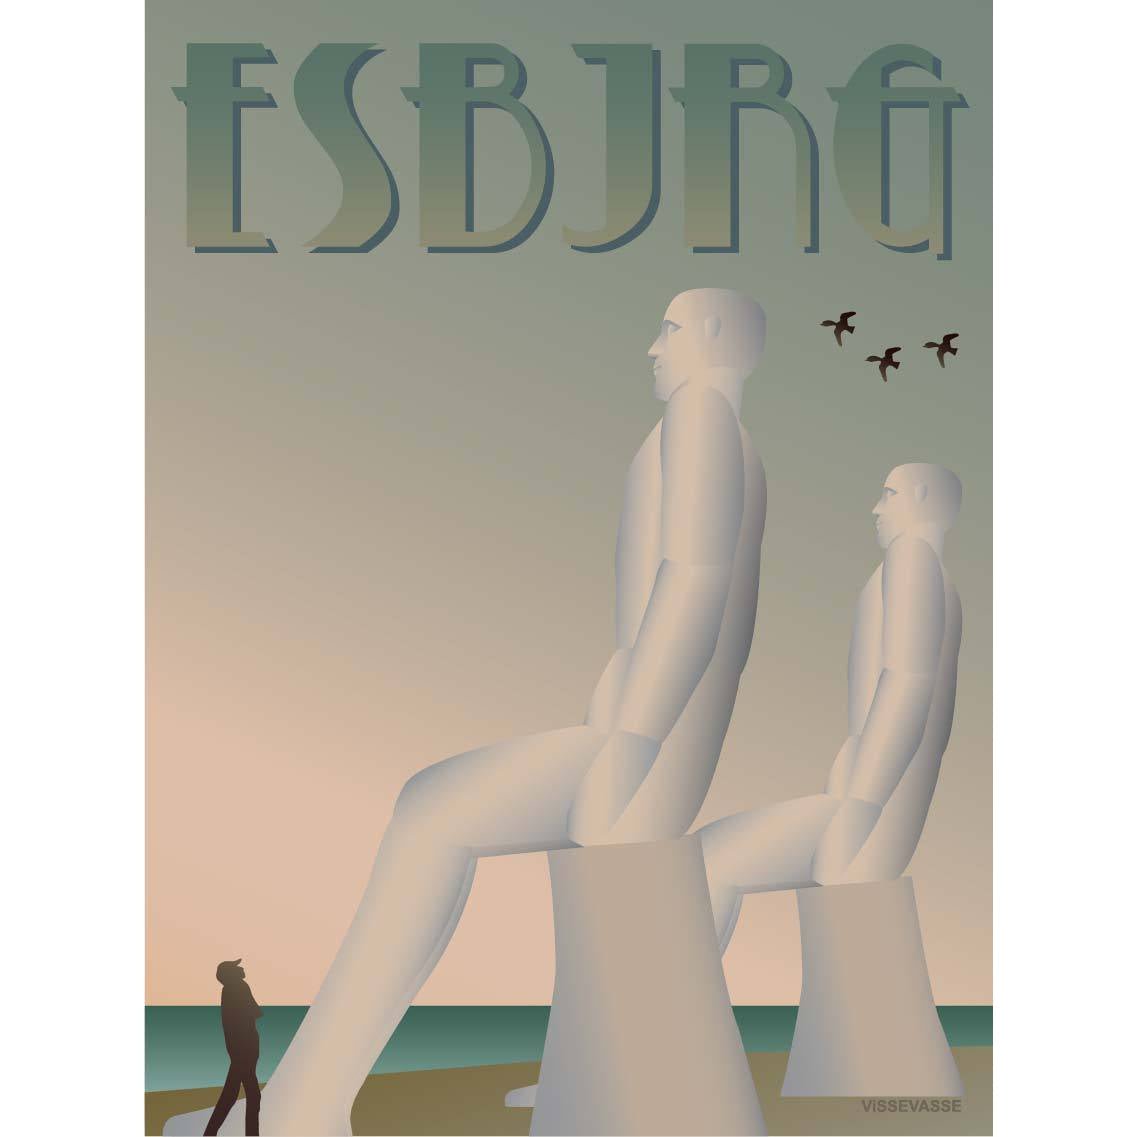 Vissevasse Esbjerg hvide mænd plakat, 15 x21 cm